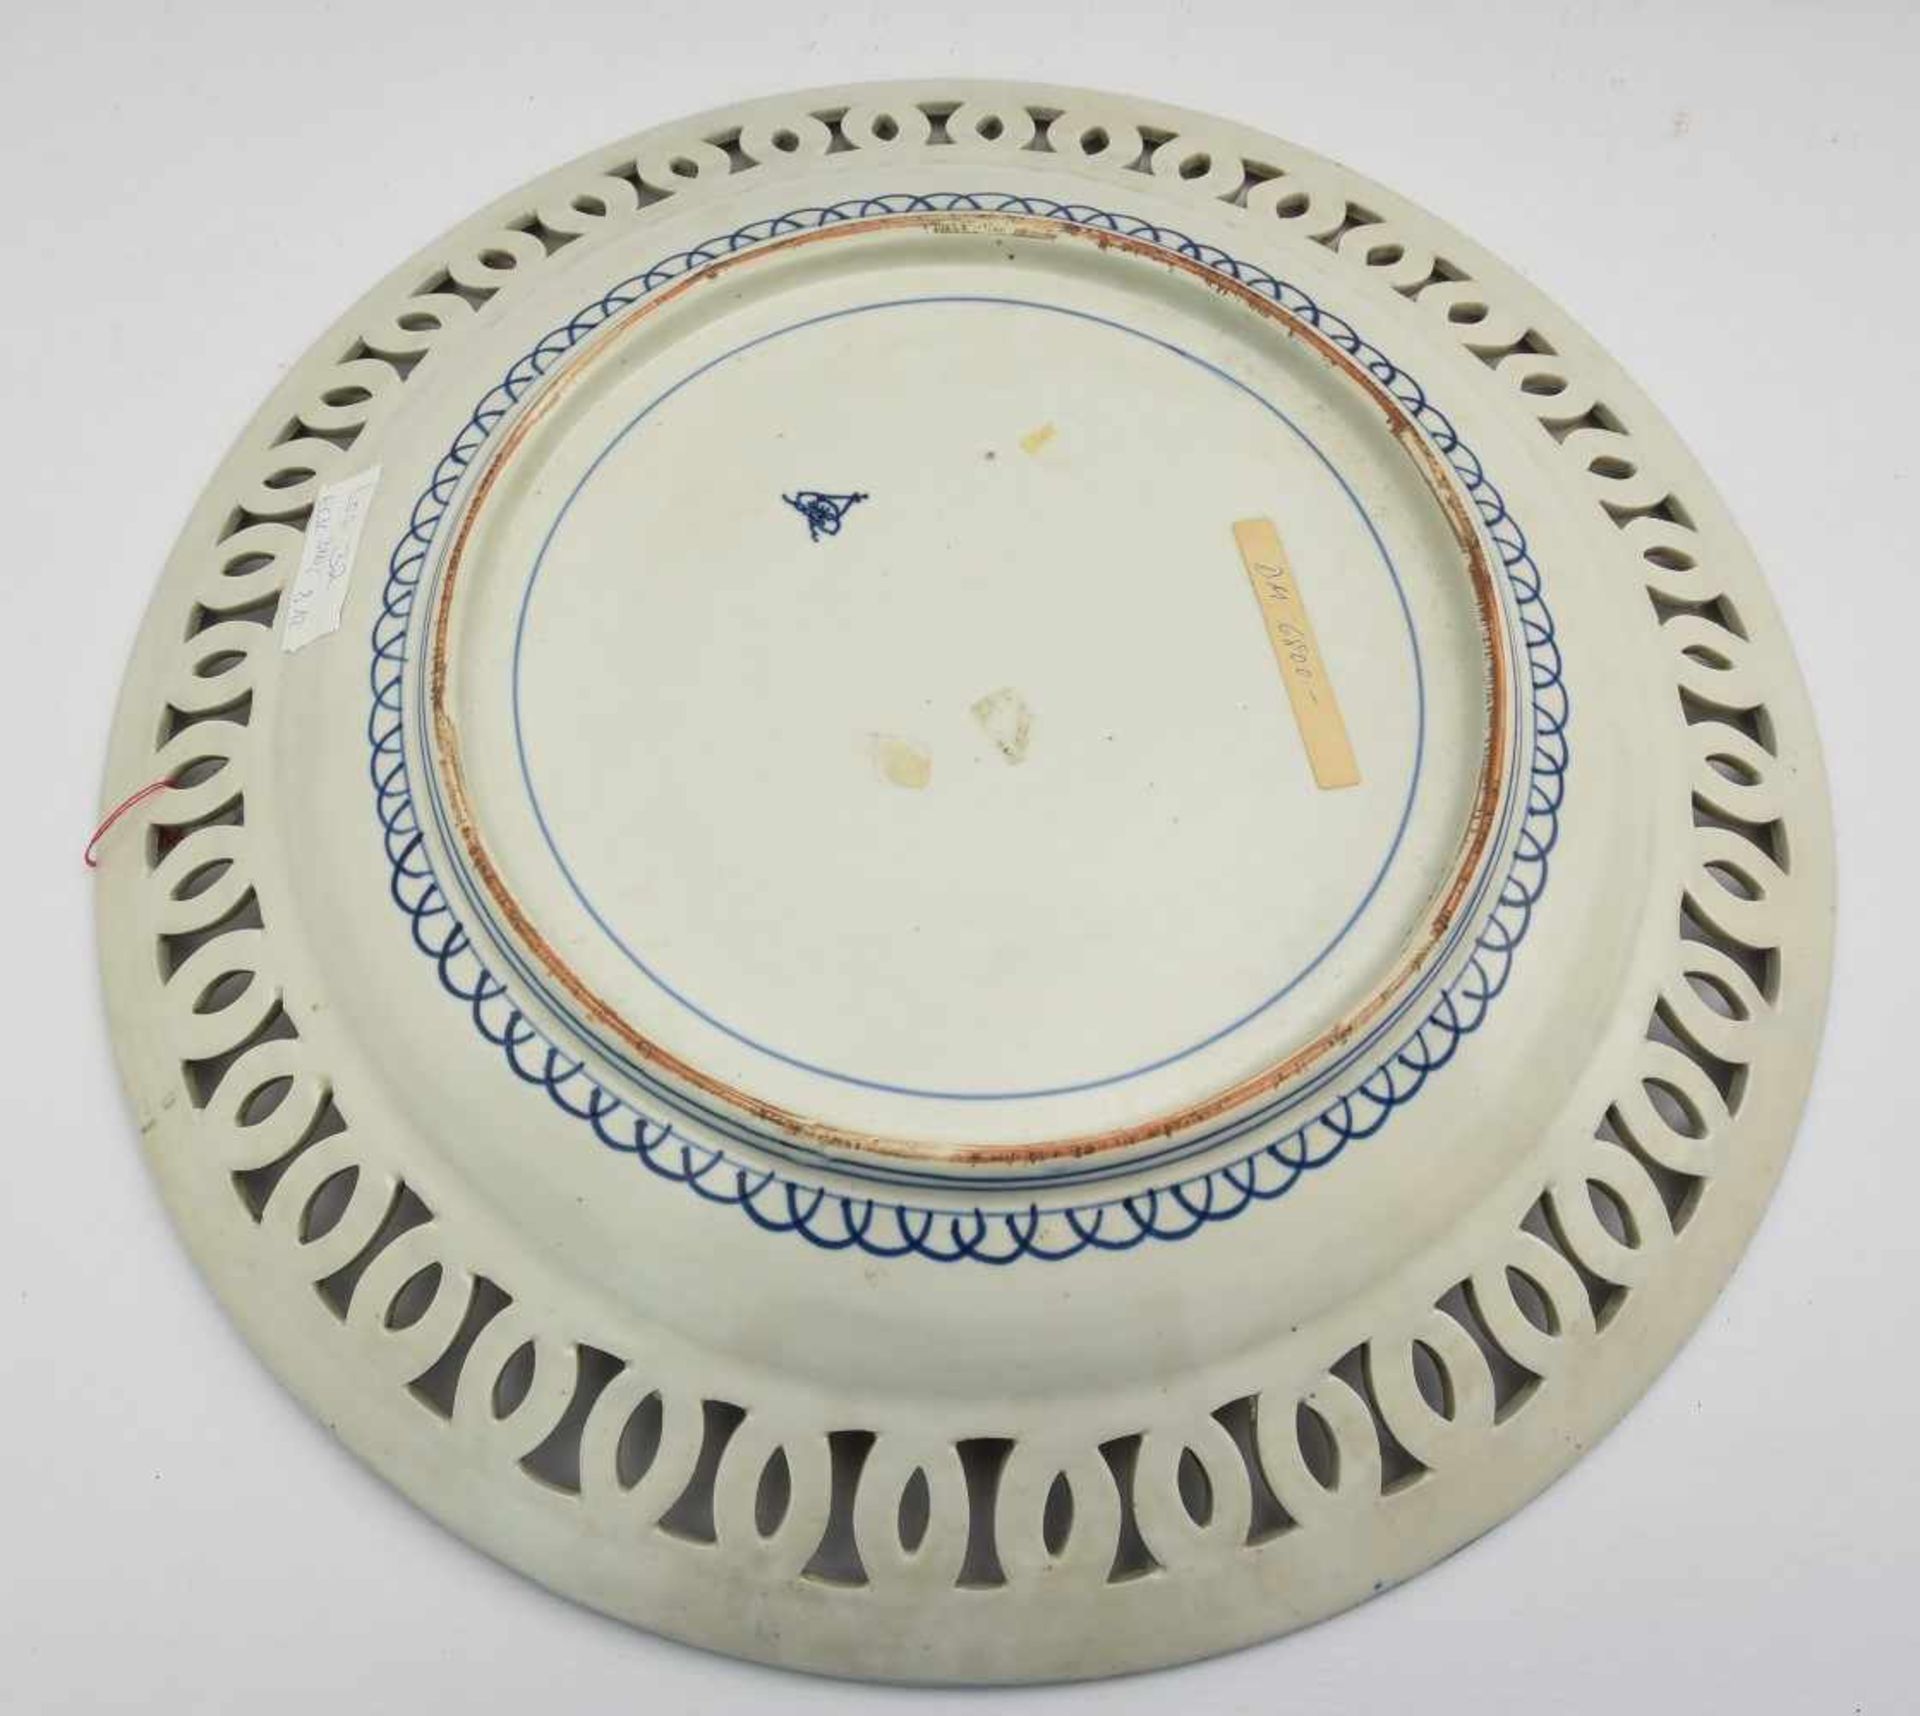 IMAVI- TELLER, bemaltes und glasiertes Porzellan gemarkt, Japan um 1800 Großer japanischer Teller - Bild 2 aus 3